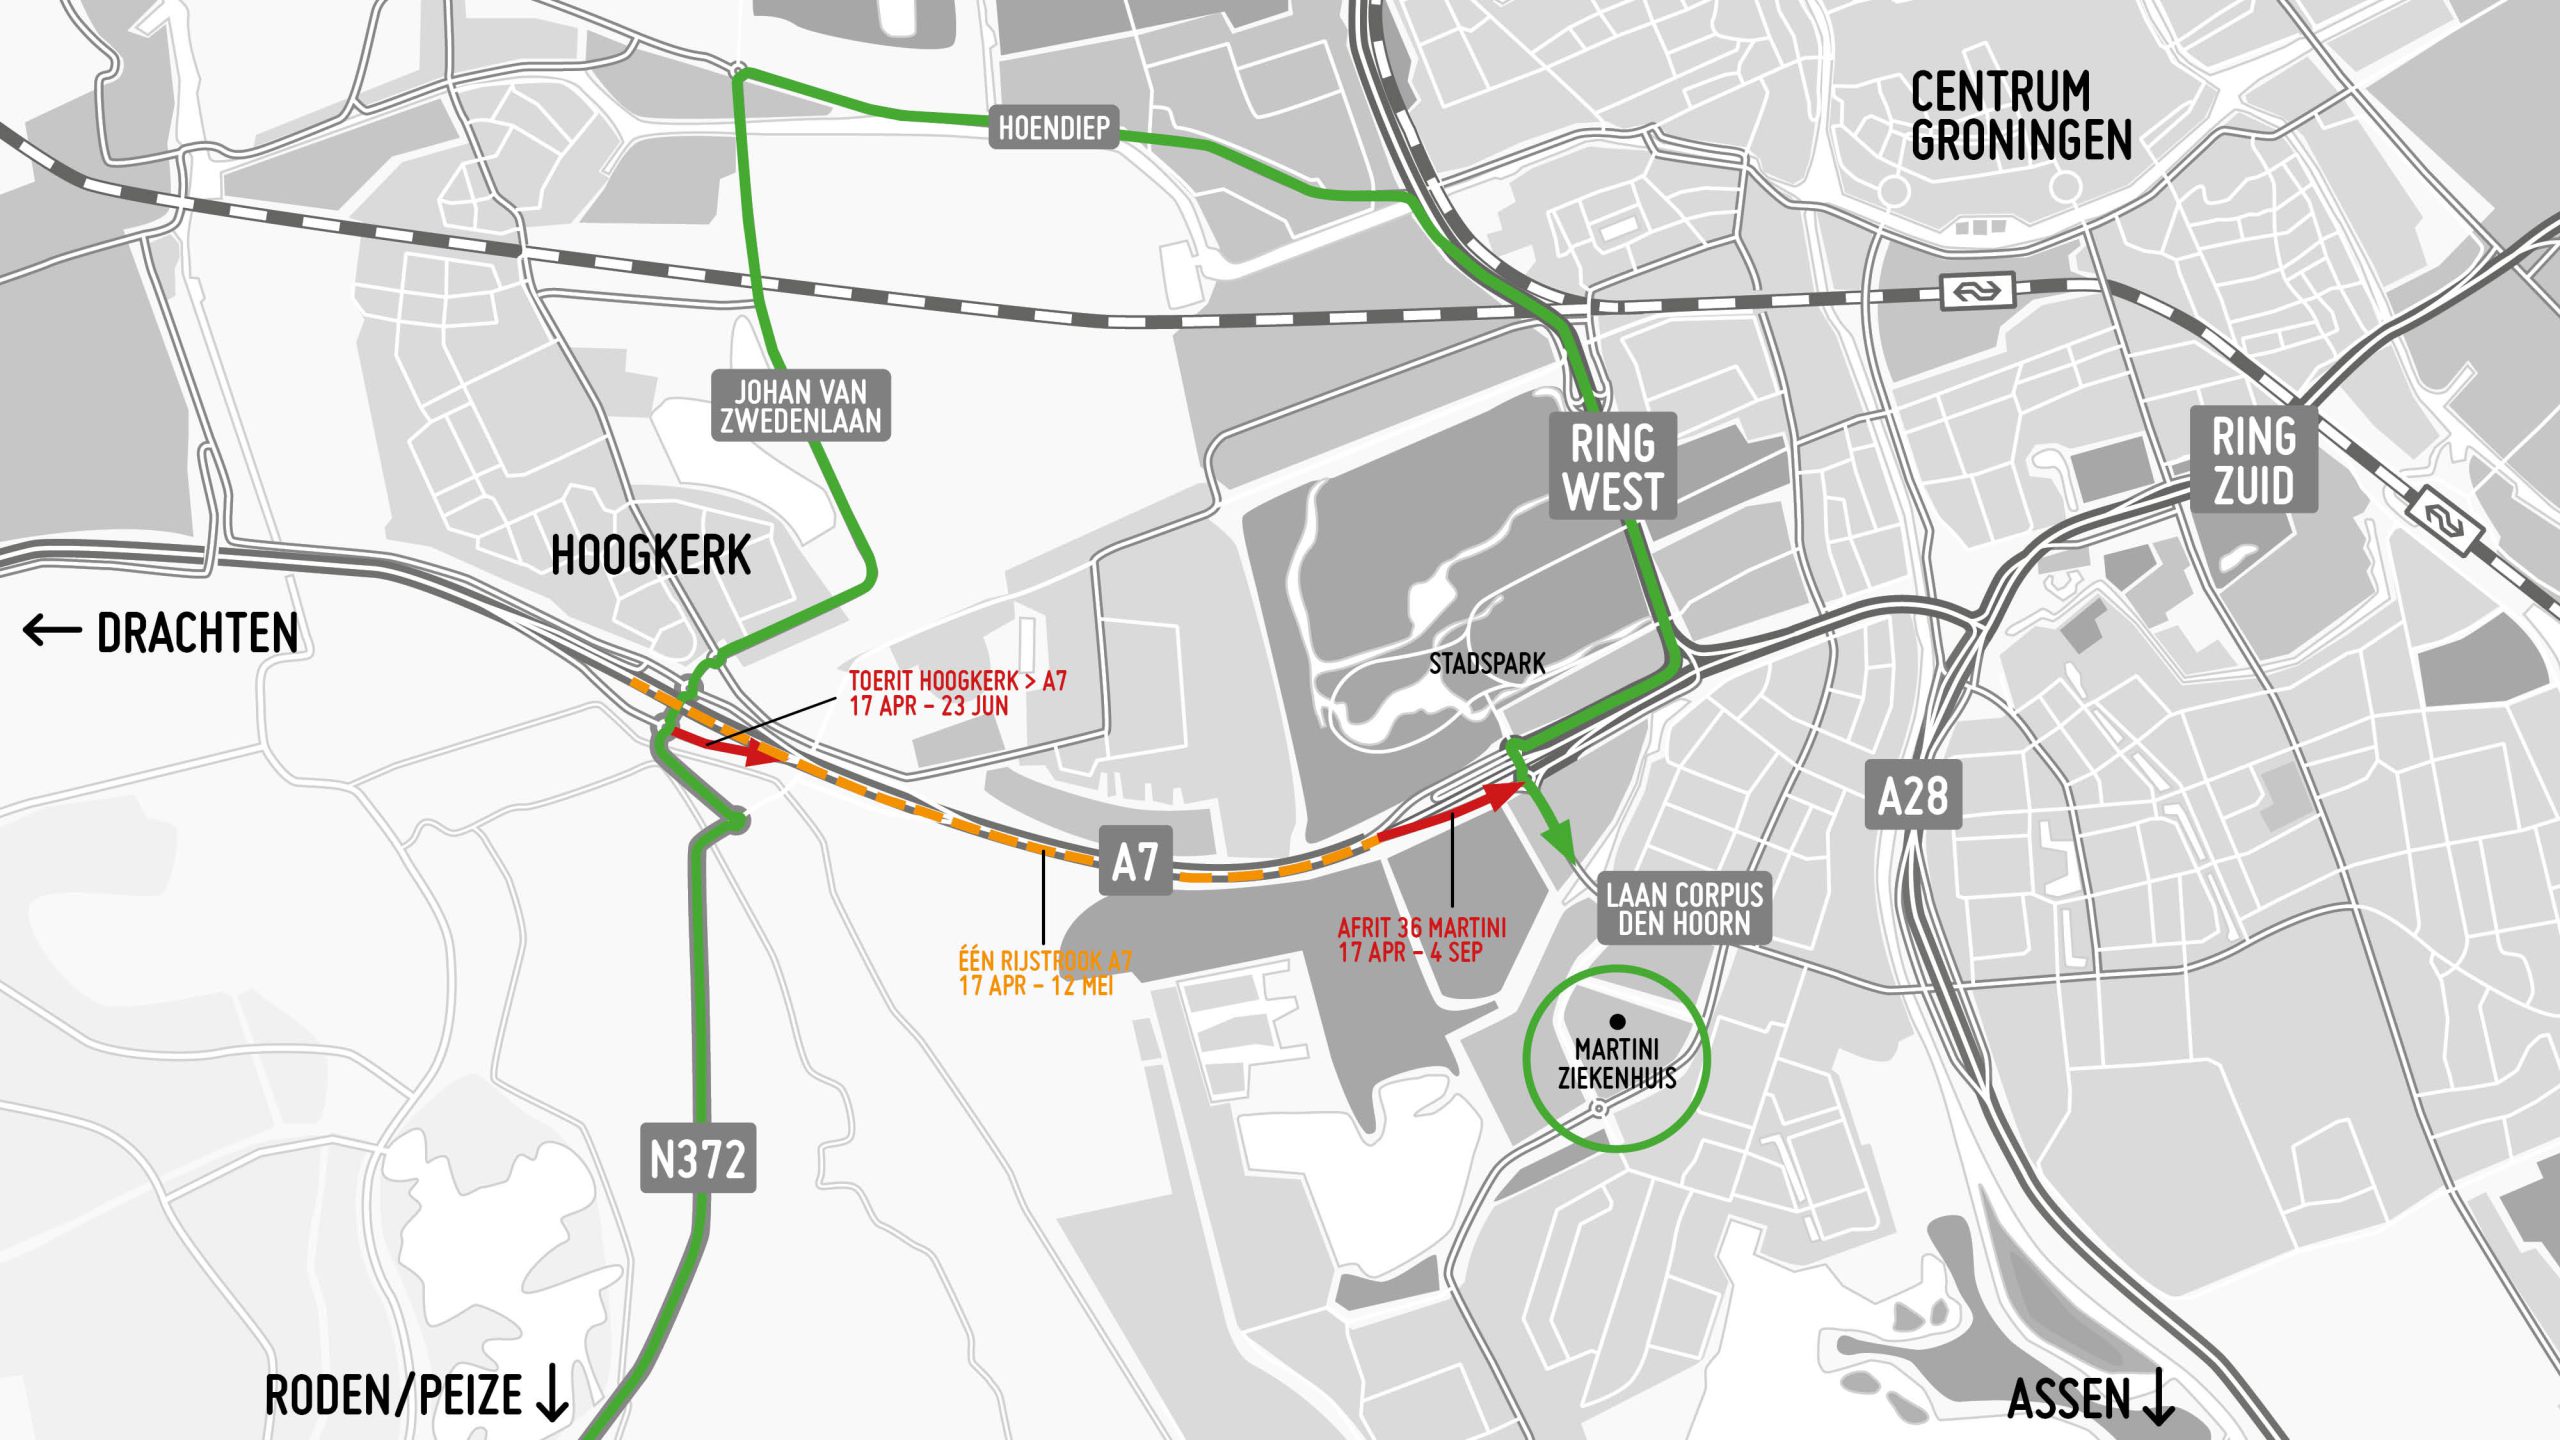 In groen de route voor verkeer vanuit Roden, Peize en Hoogkerk naar het Martini Ziekenhuis.